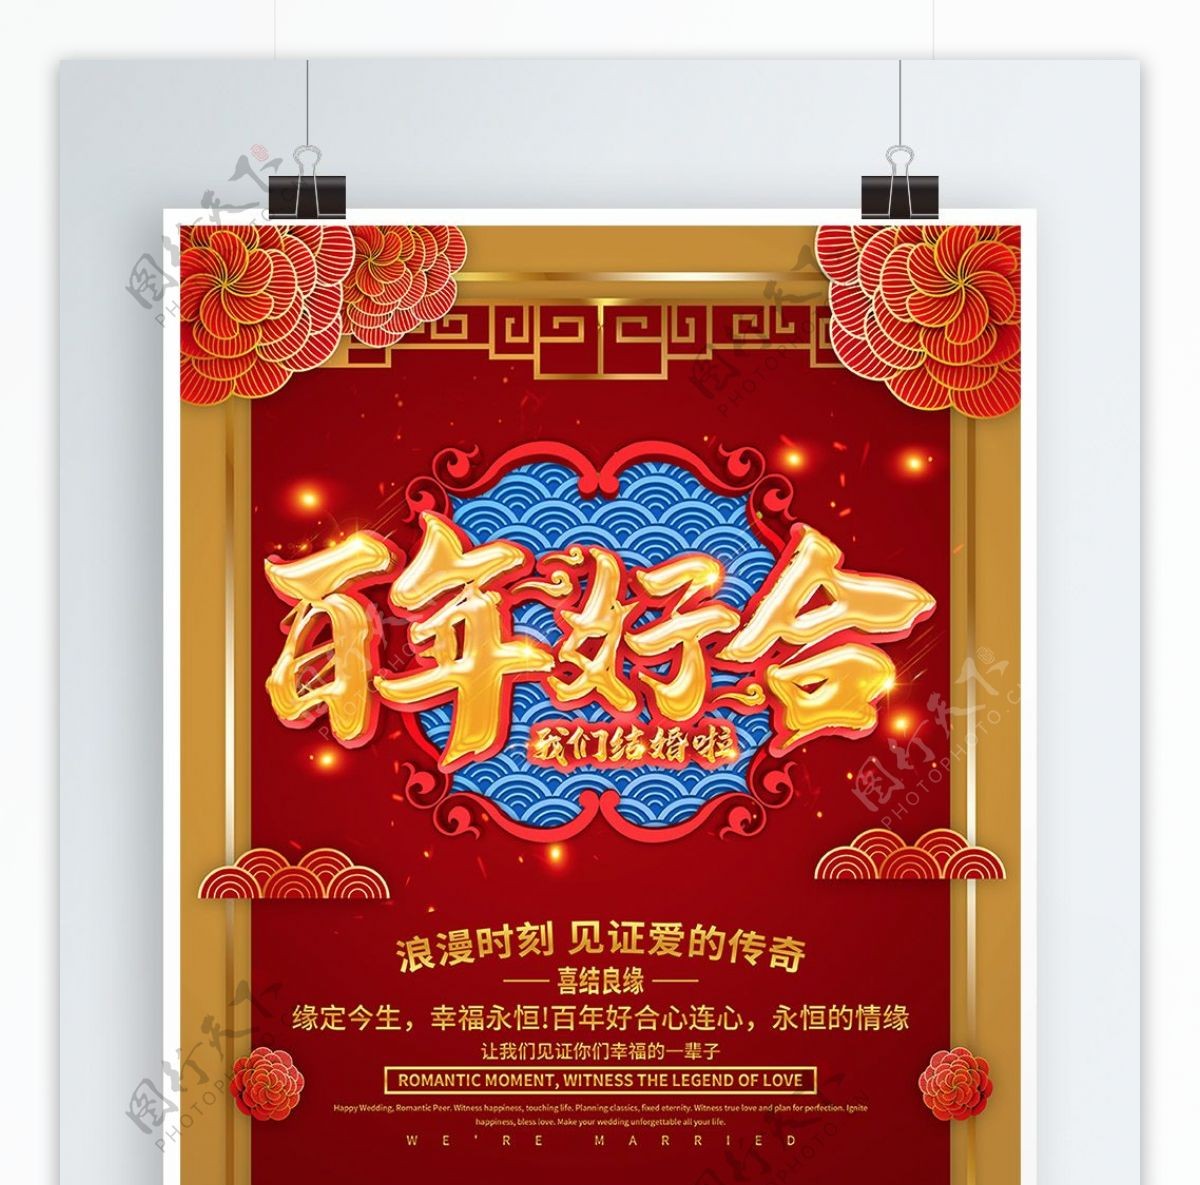 红色喜庆百年好合婚礼宣传海报设计